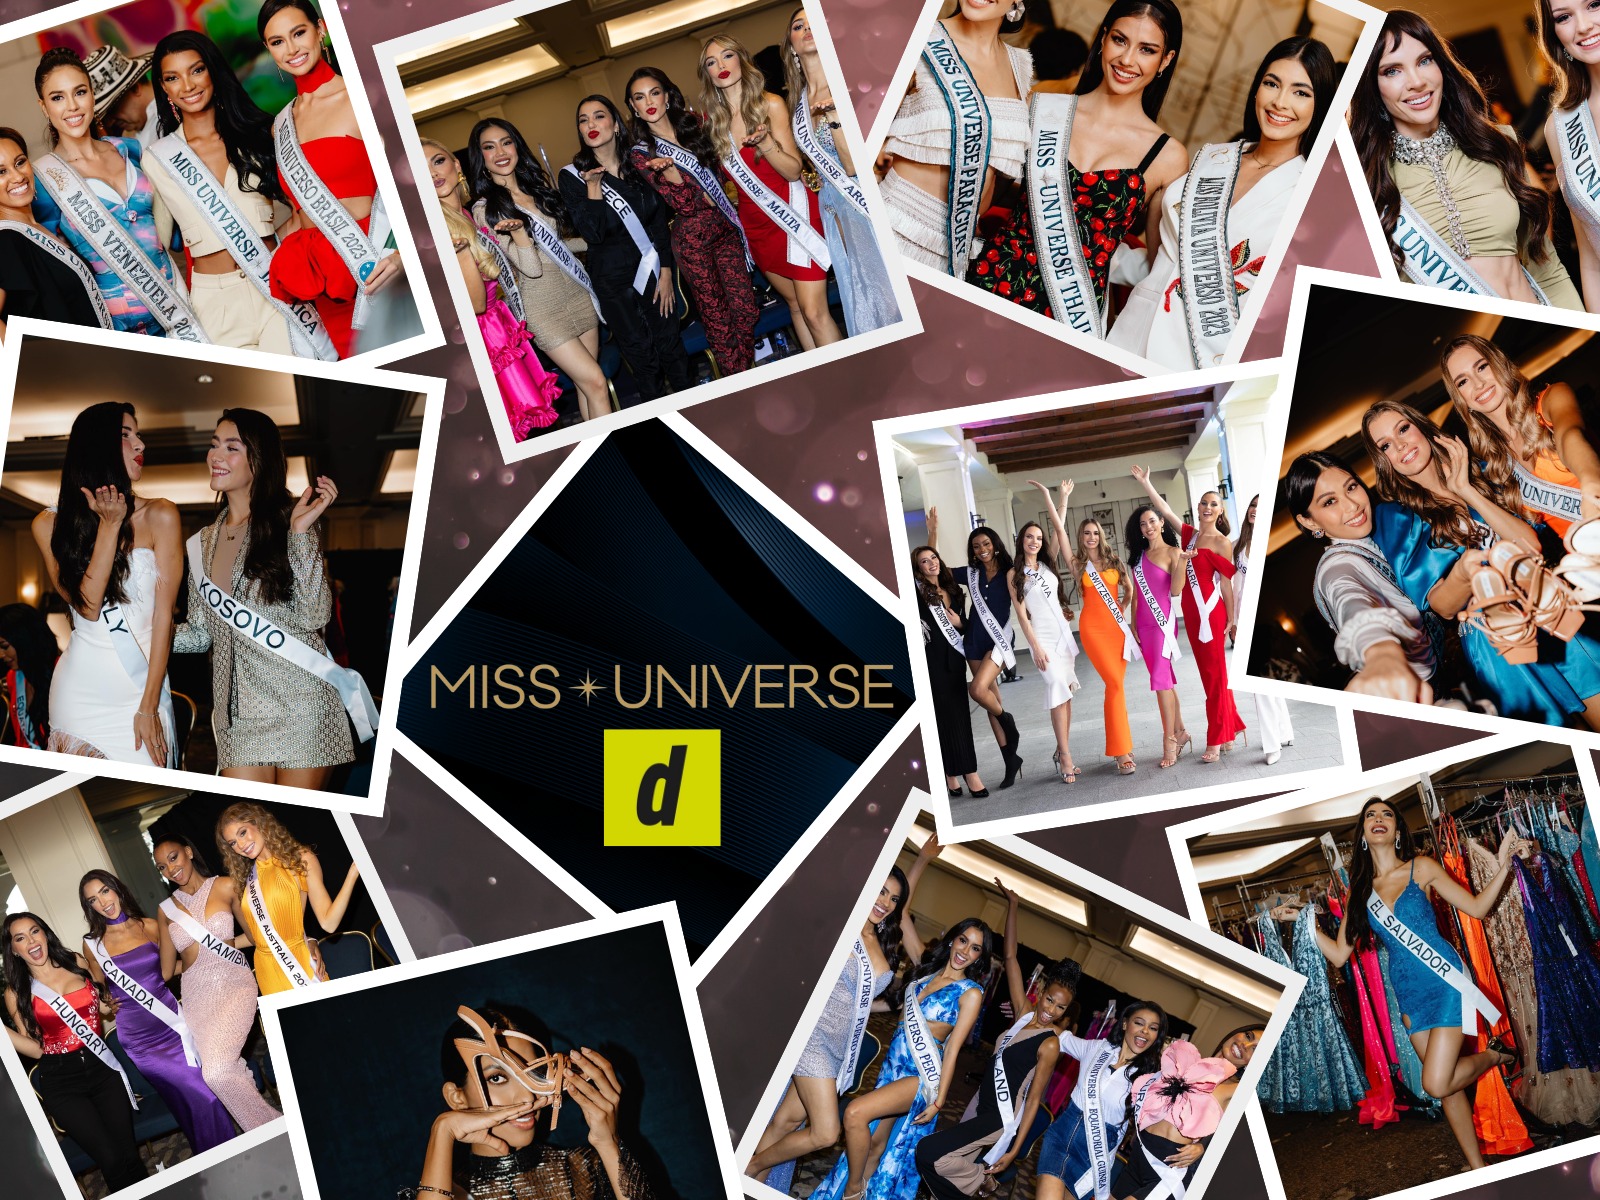 Este sábado 18 de noviembre se llevará a cabo el Miss Universo 2023, concurso de belleza femenina internacional y anual en el que se elegirá a la sucesora de R'Bonney Gabriel como "la mujer más bella del universo". | Crédito: Miss Universe / Facebook / Composición